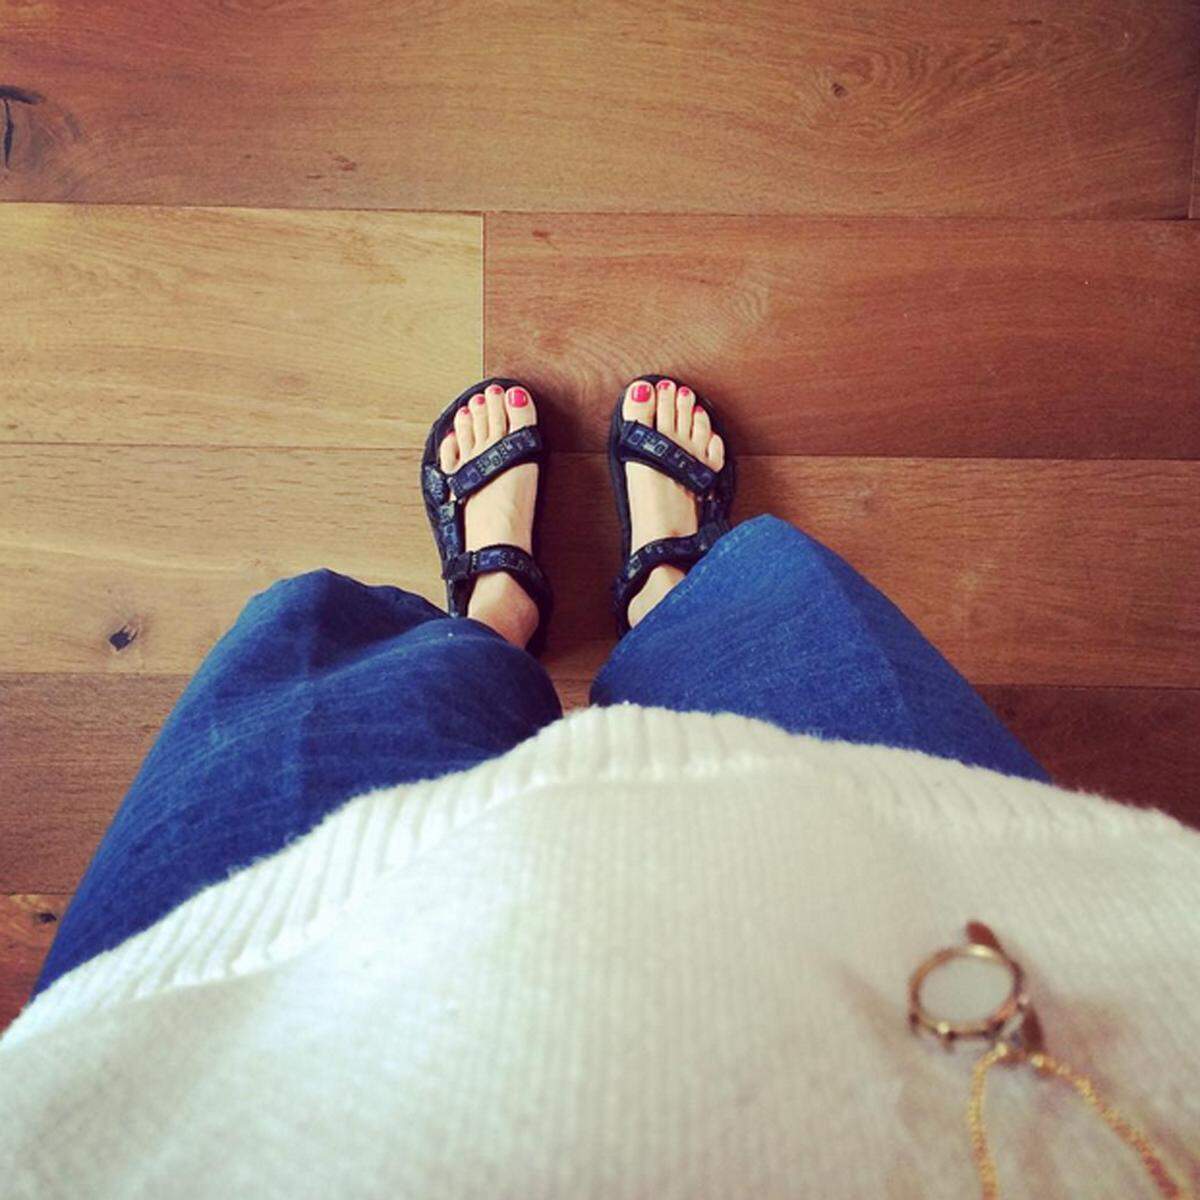 Der Ehemann dieser Instagrammerin dachte, die Schuhe hätte sie aus Versehen an.